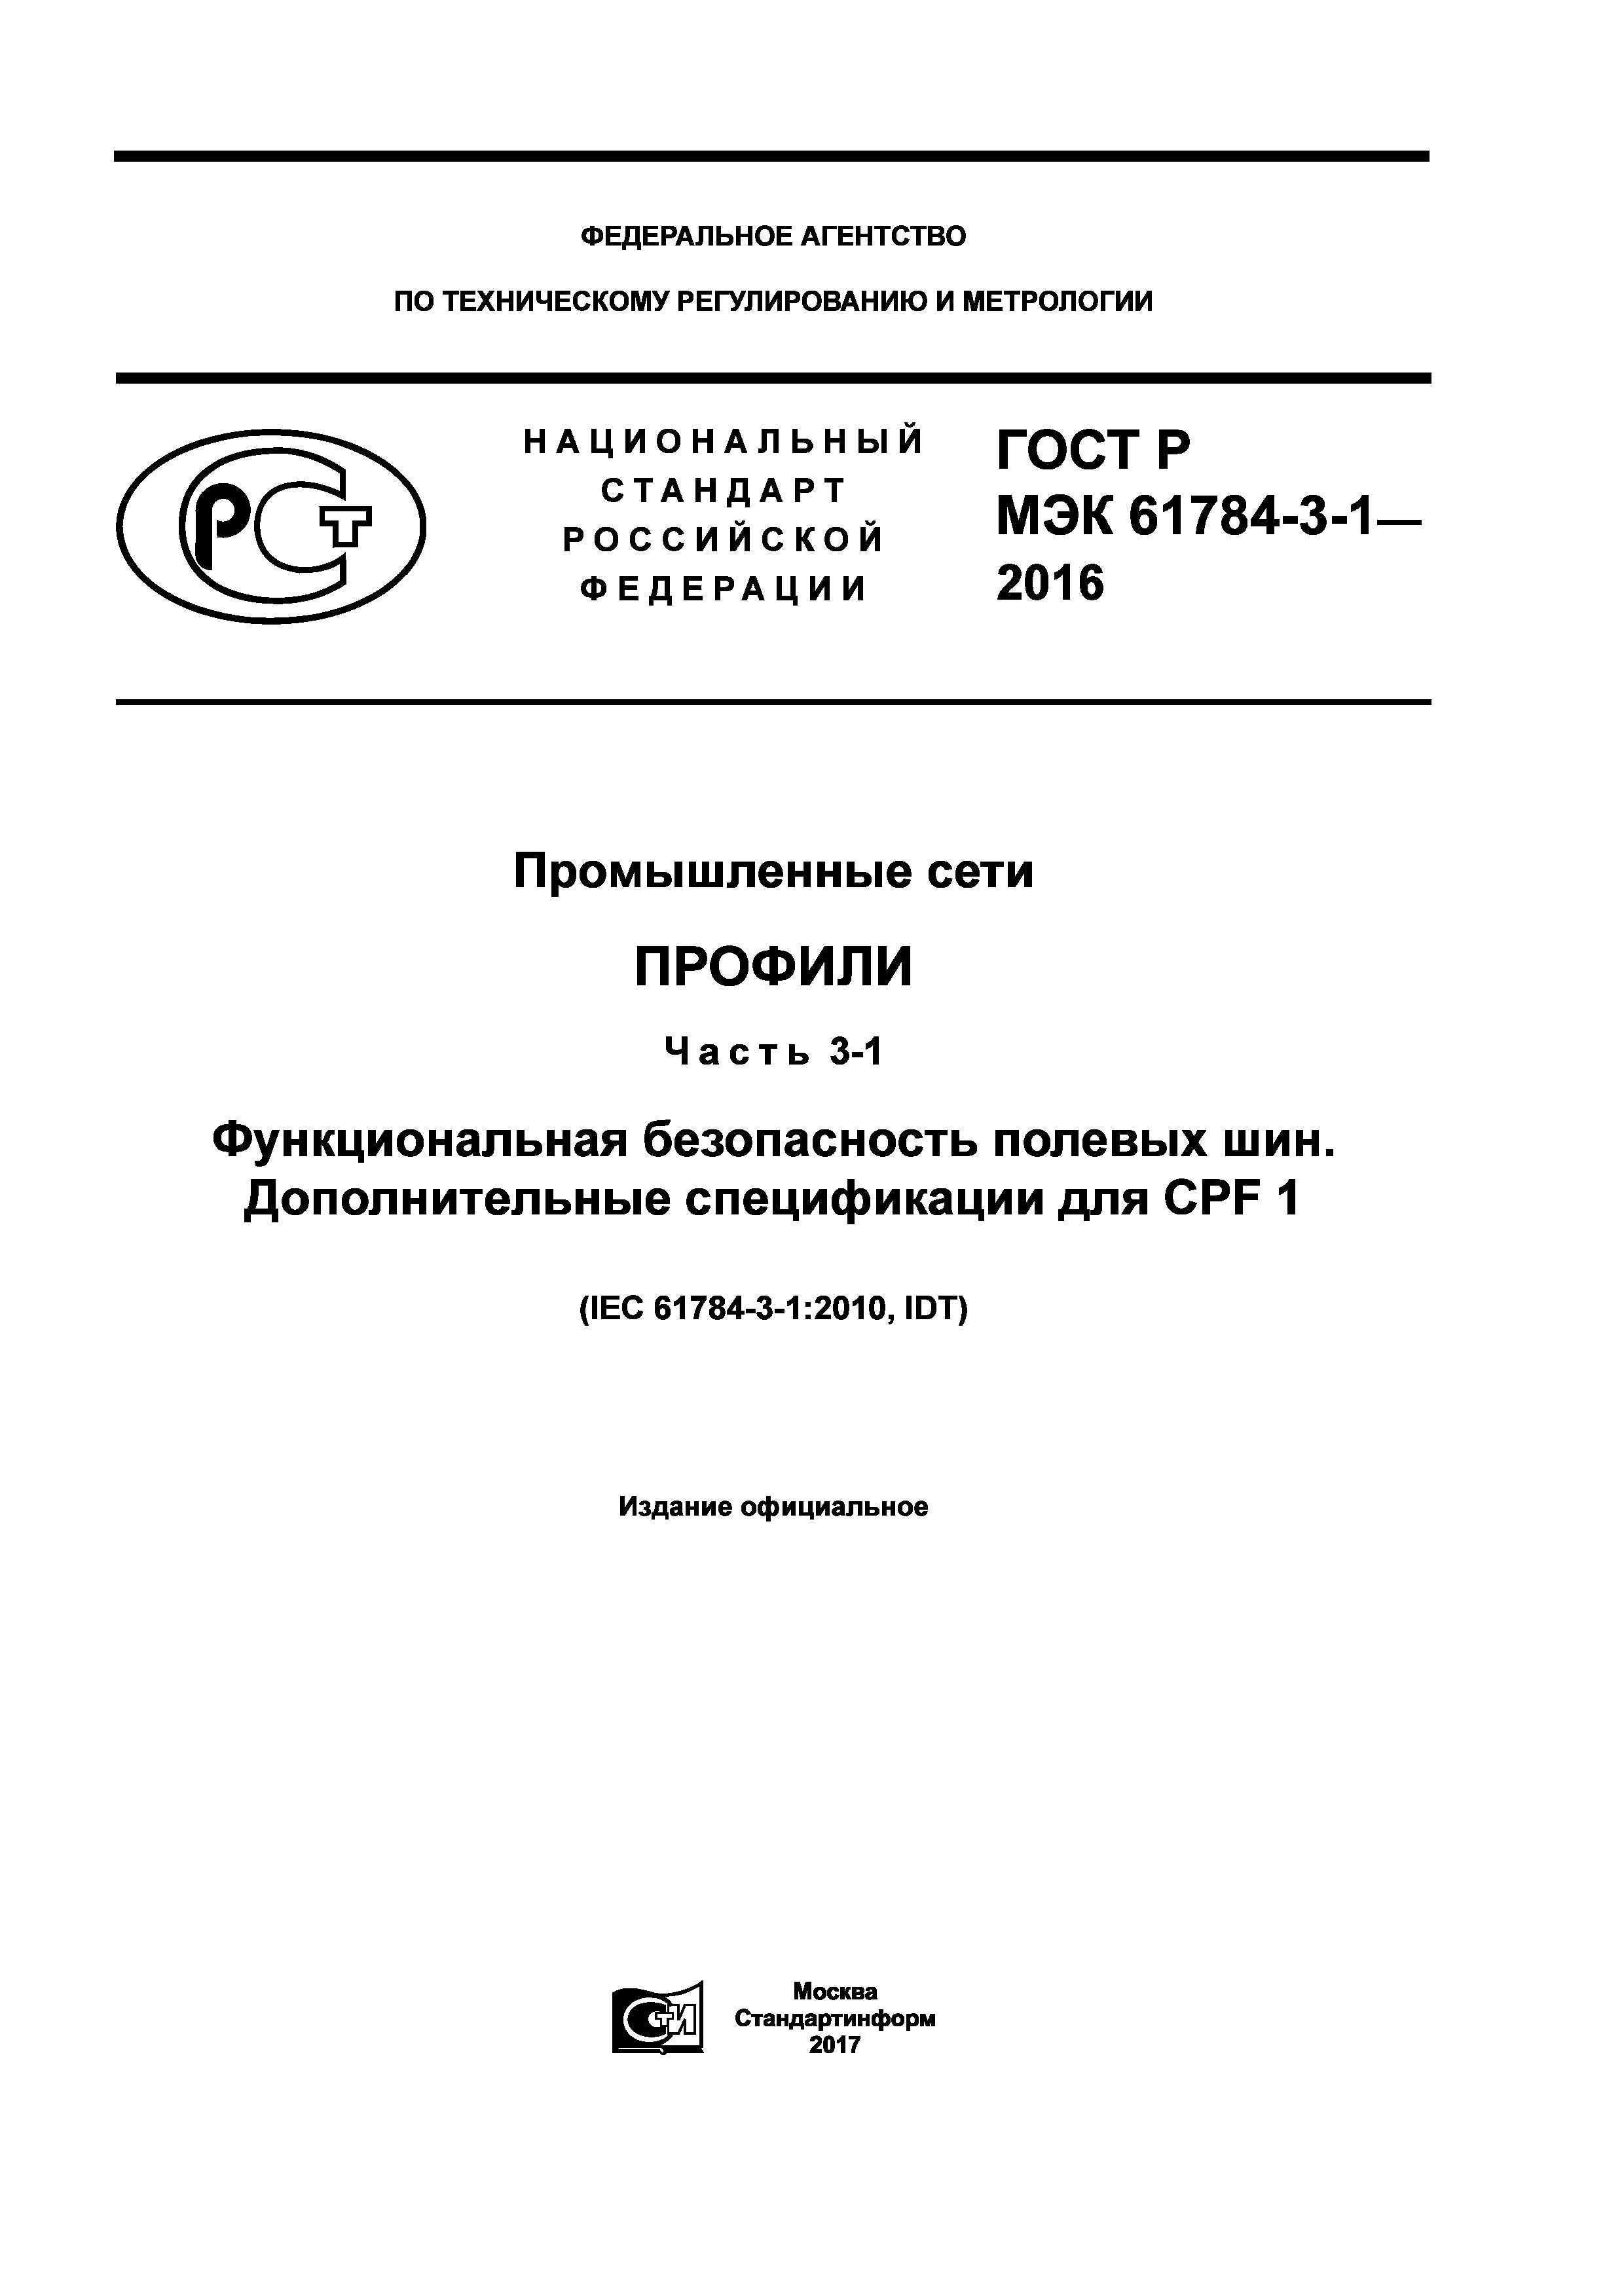 ГОСТ Р МЭК 61784-3-1-2016